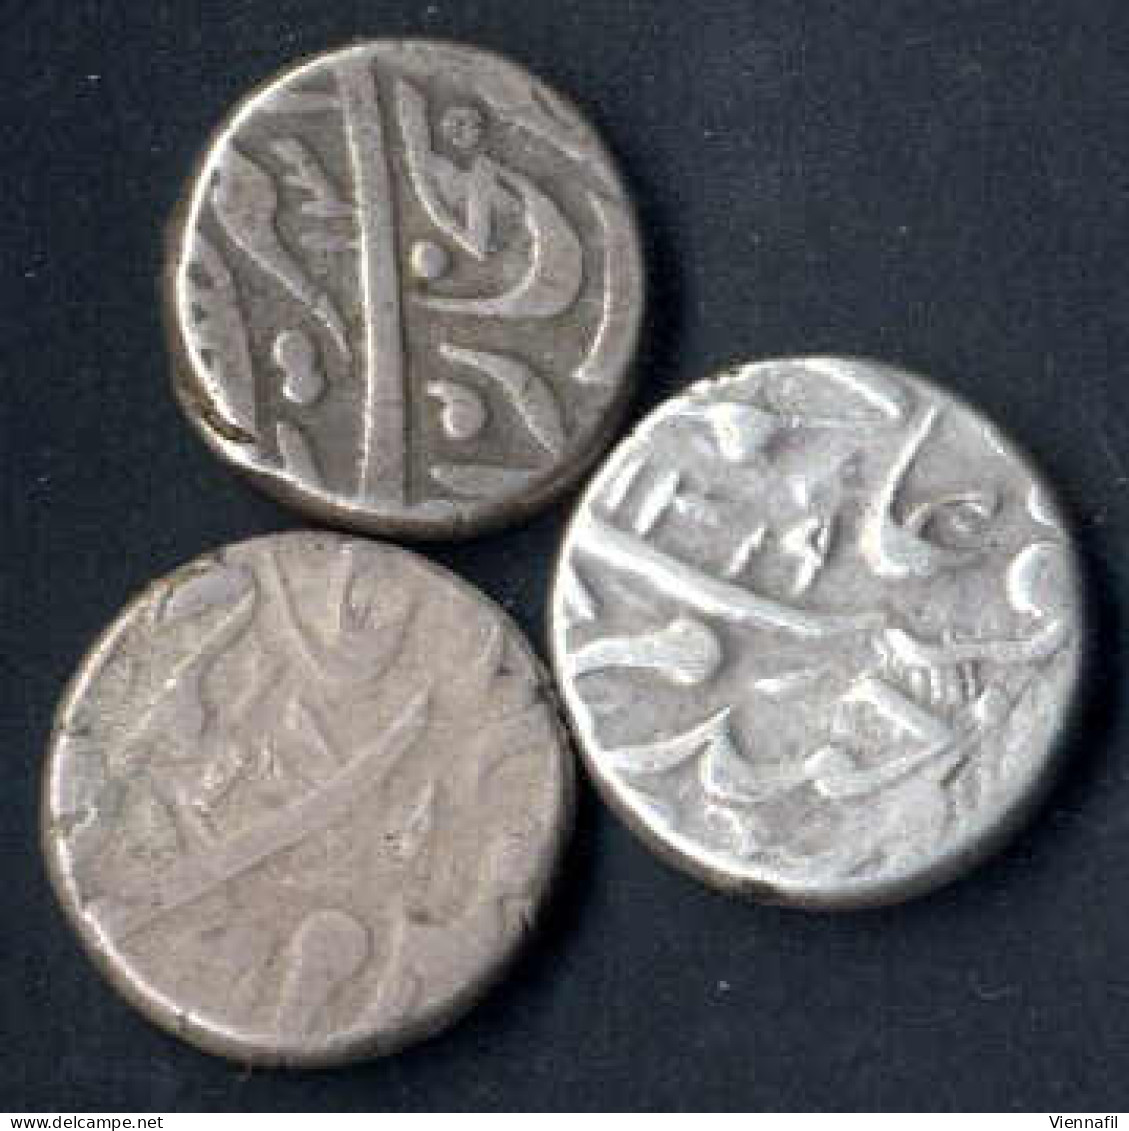 Russisch Turkestan Emirat Von Bukhara, Tenga Silber, 1299,1306,1310,1319 AH, Craig 91 Y 2, Sehr Schön-, 6 Stück - Uzbekistan